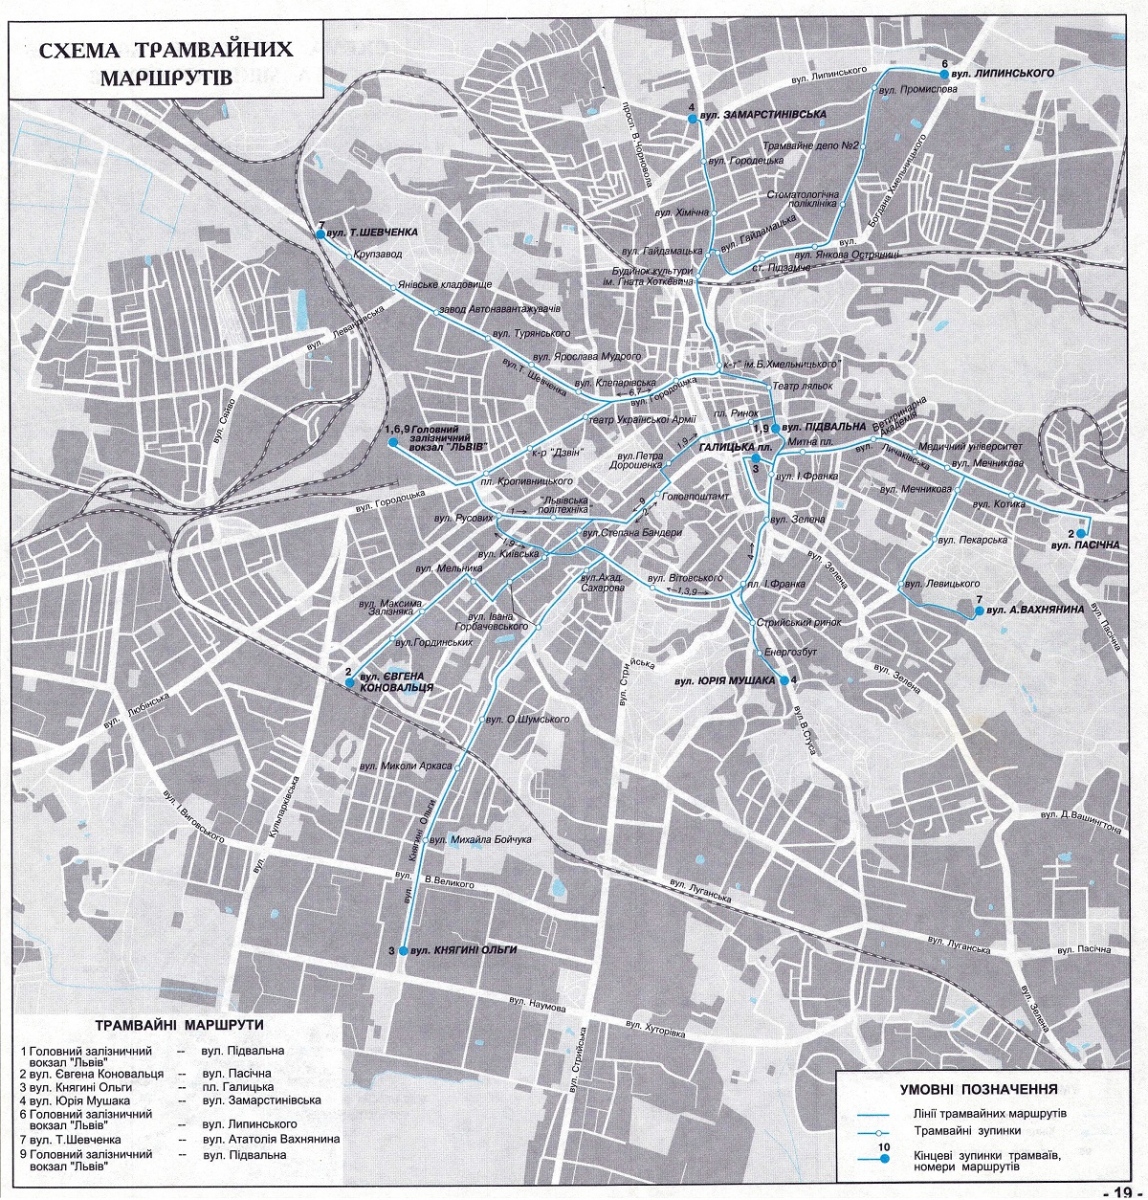 Léopol — Maps